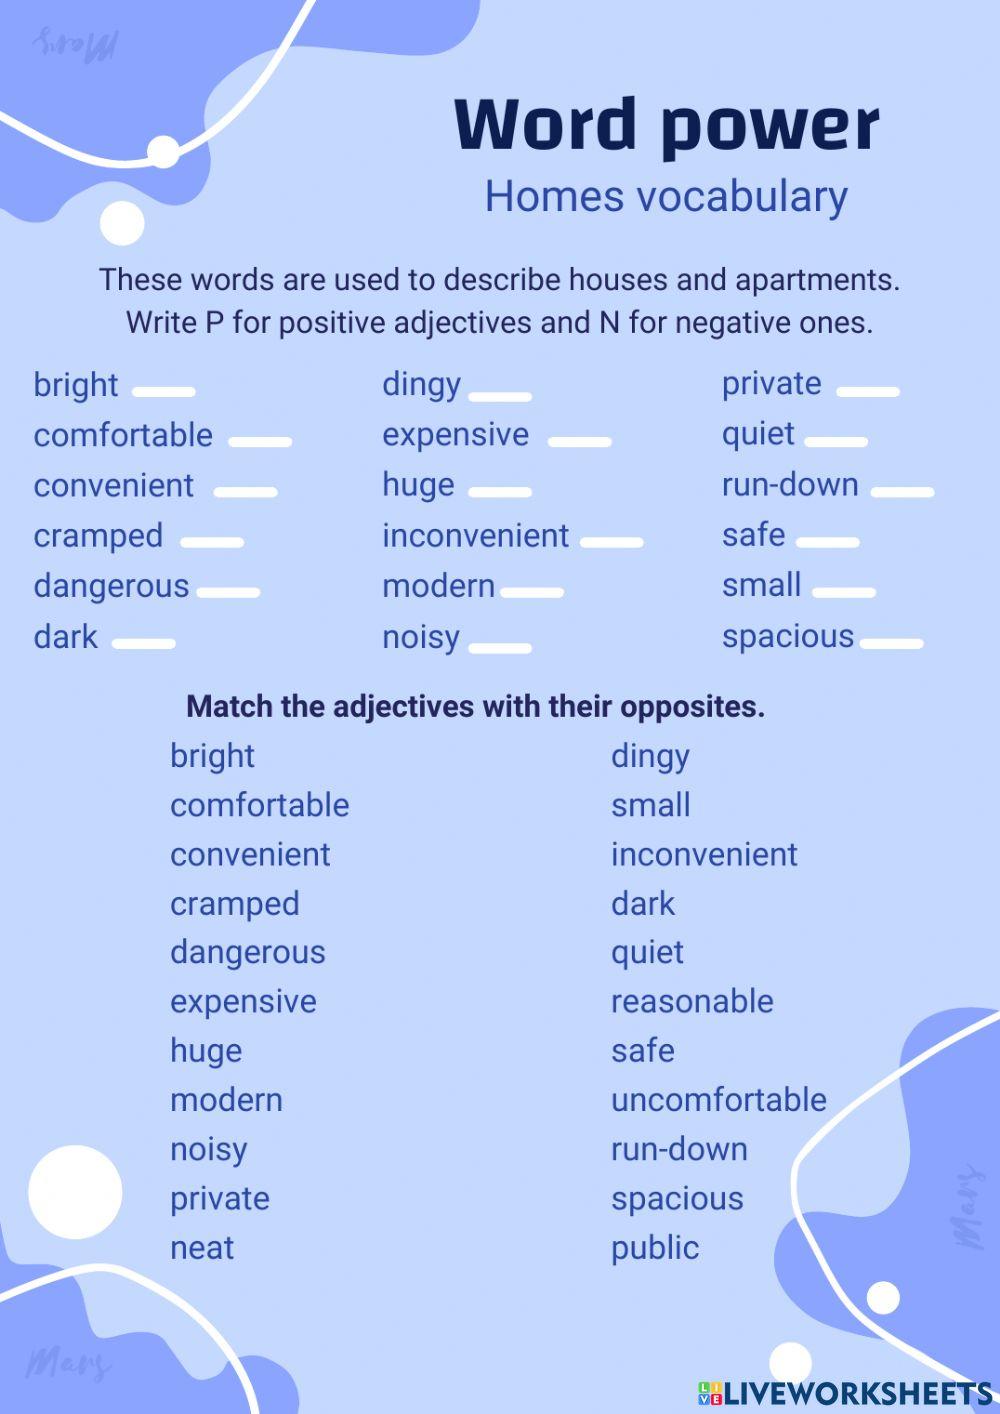 Homes vocabulary